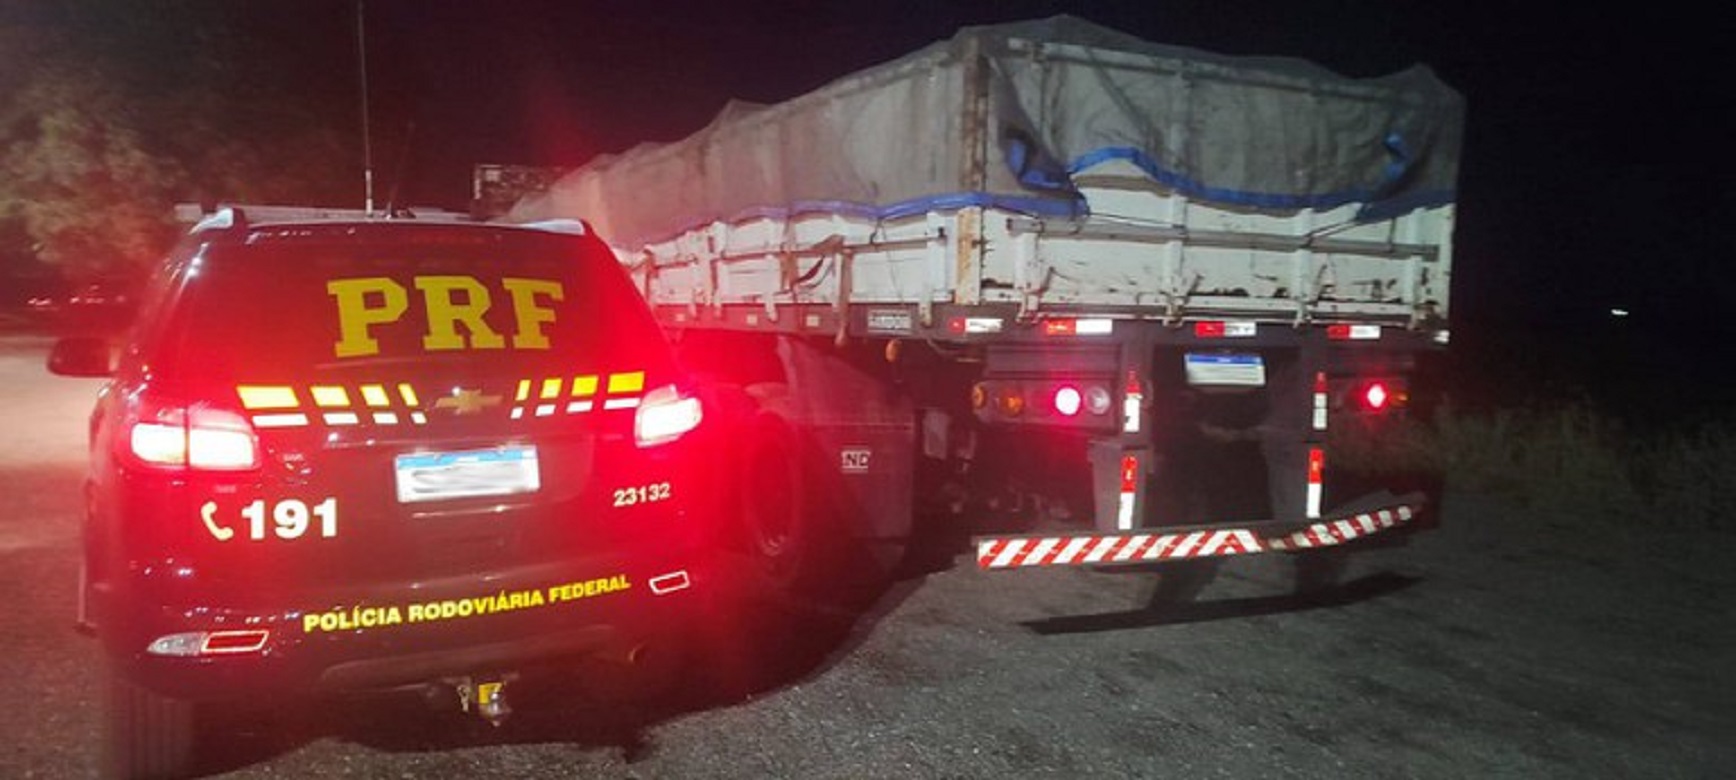 PRF intercepta caminhão com AET falsa em Sorriso, Mato Grosso